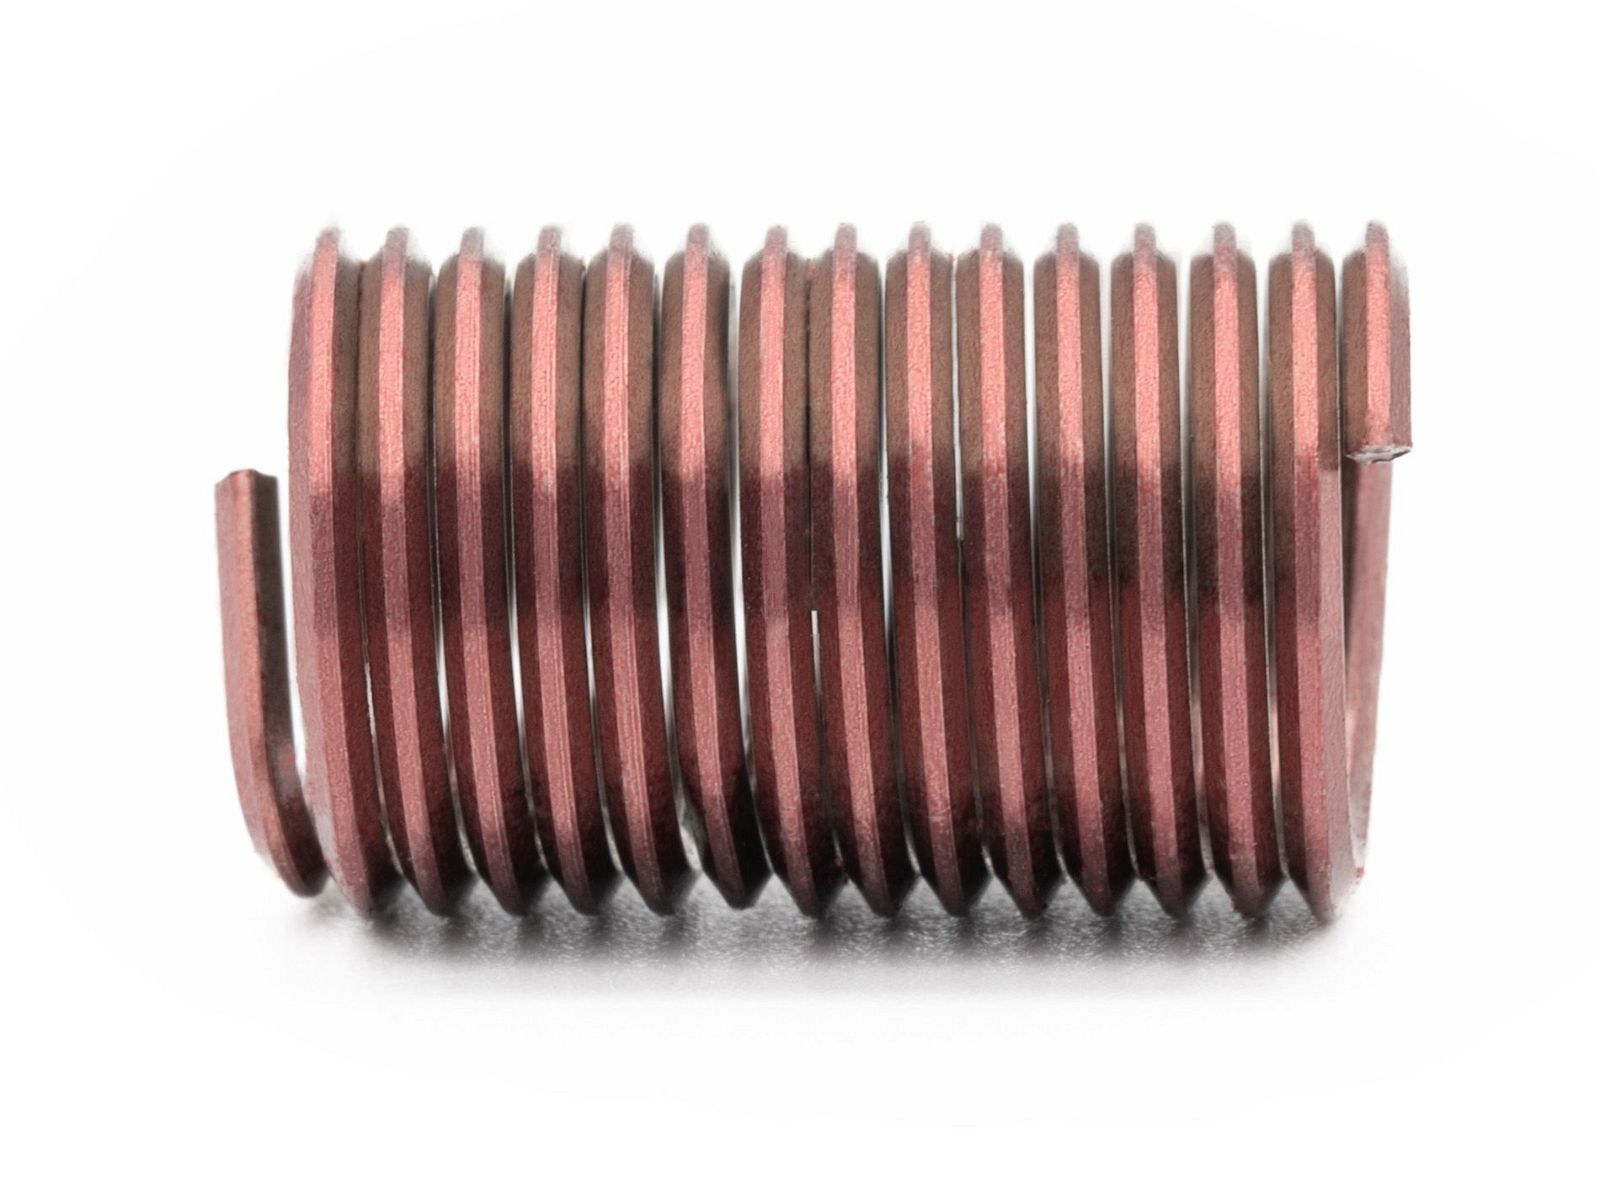 BaerCoil Wire Thread Inserts UNF 1/2 x 20 - 2.5 D (31.75 mm) - screw grip (screw locking) - 100 pcs.